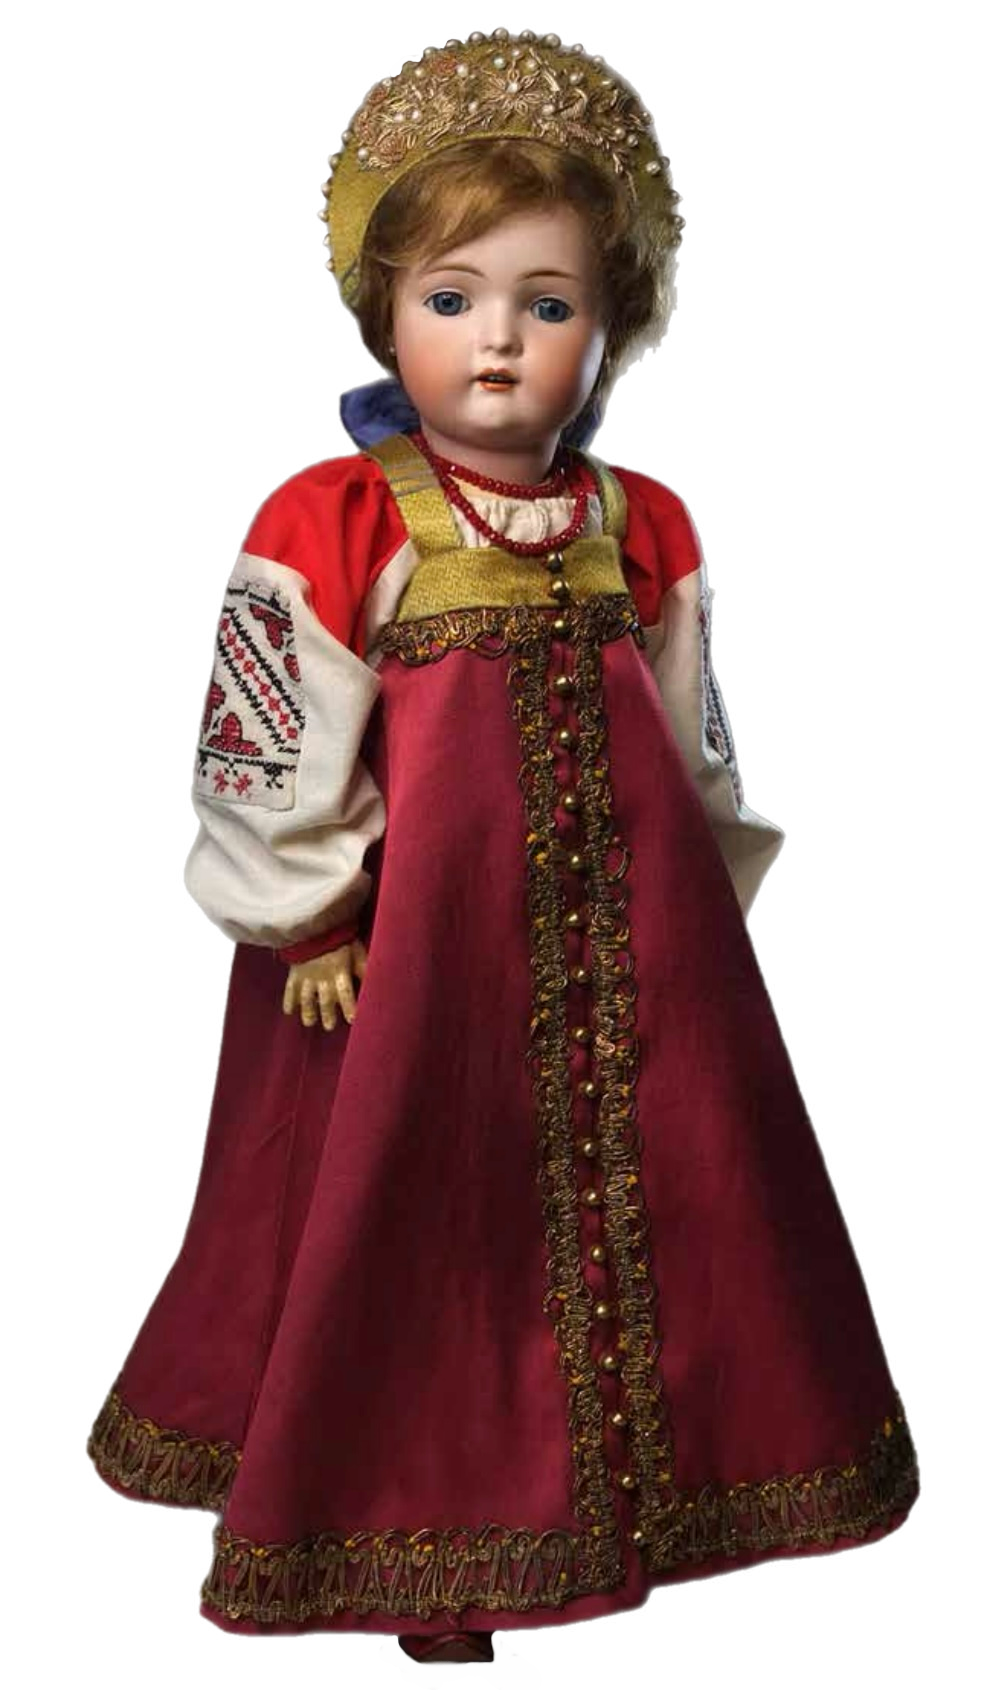 Кукла в народном костюме от Натальи Курочкиной из рубрики "Наряд для куклы"